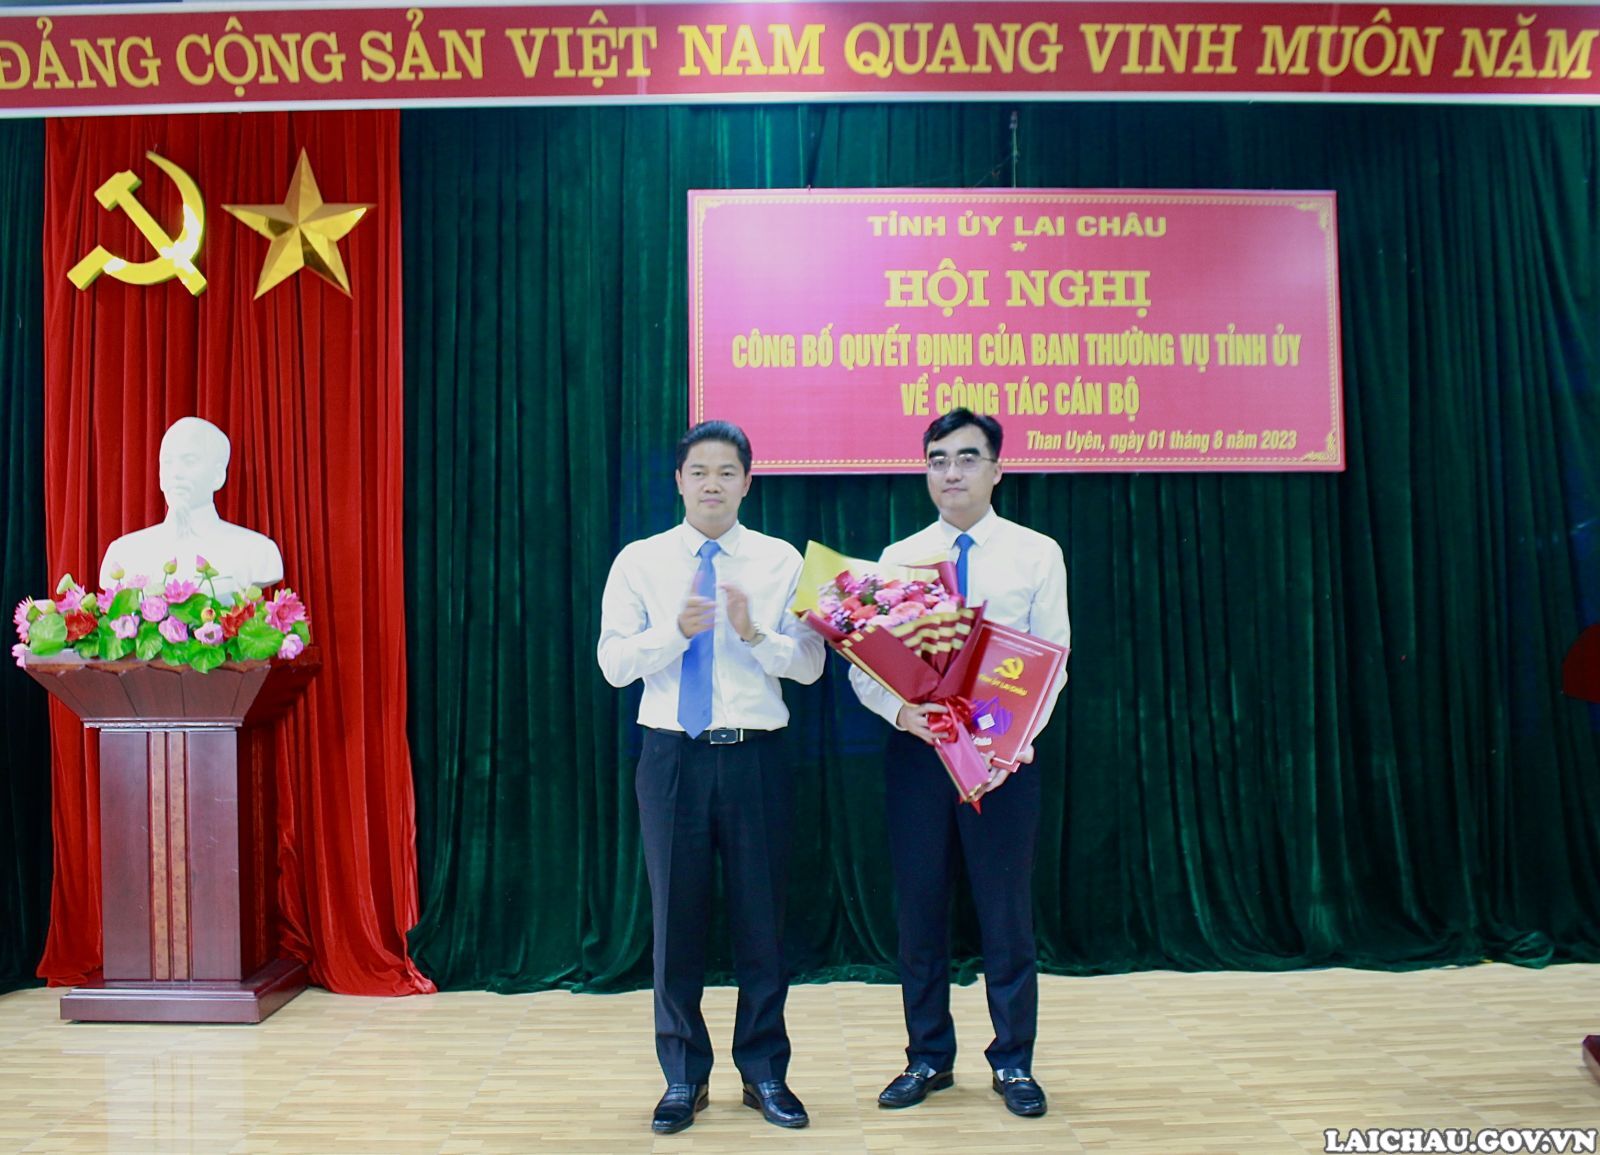 Tỉnh uỷ Lai Châu công bố quyết định về công tác cán bộ đối với huyện Than Uyên